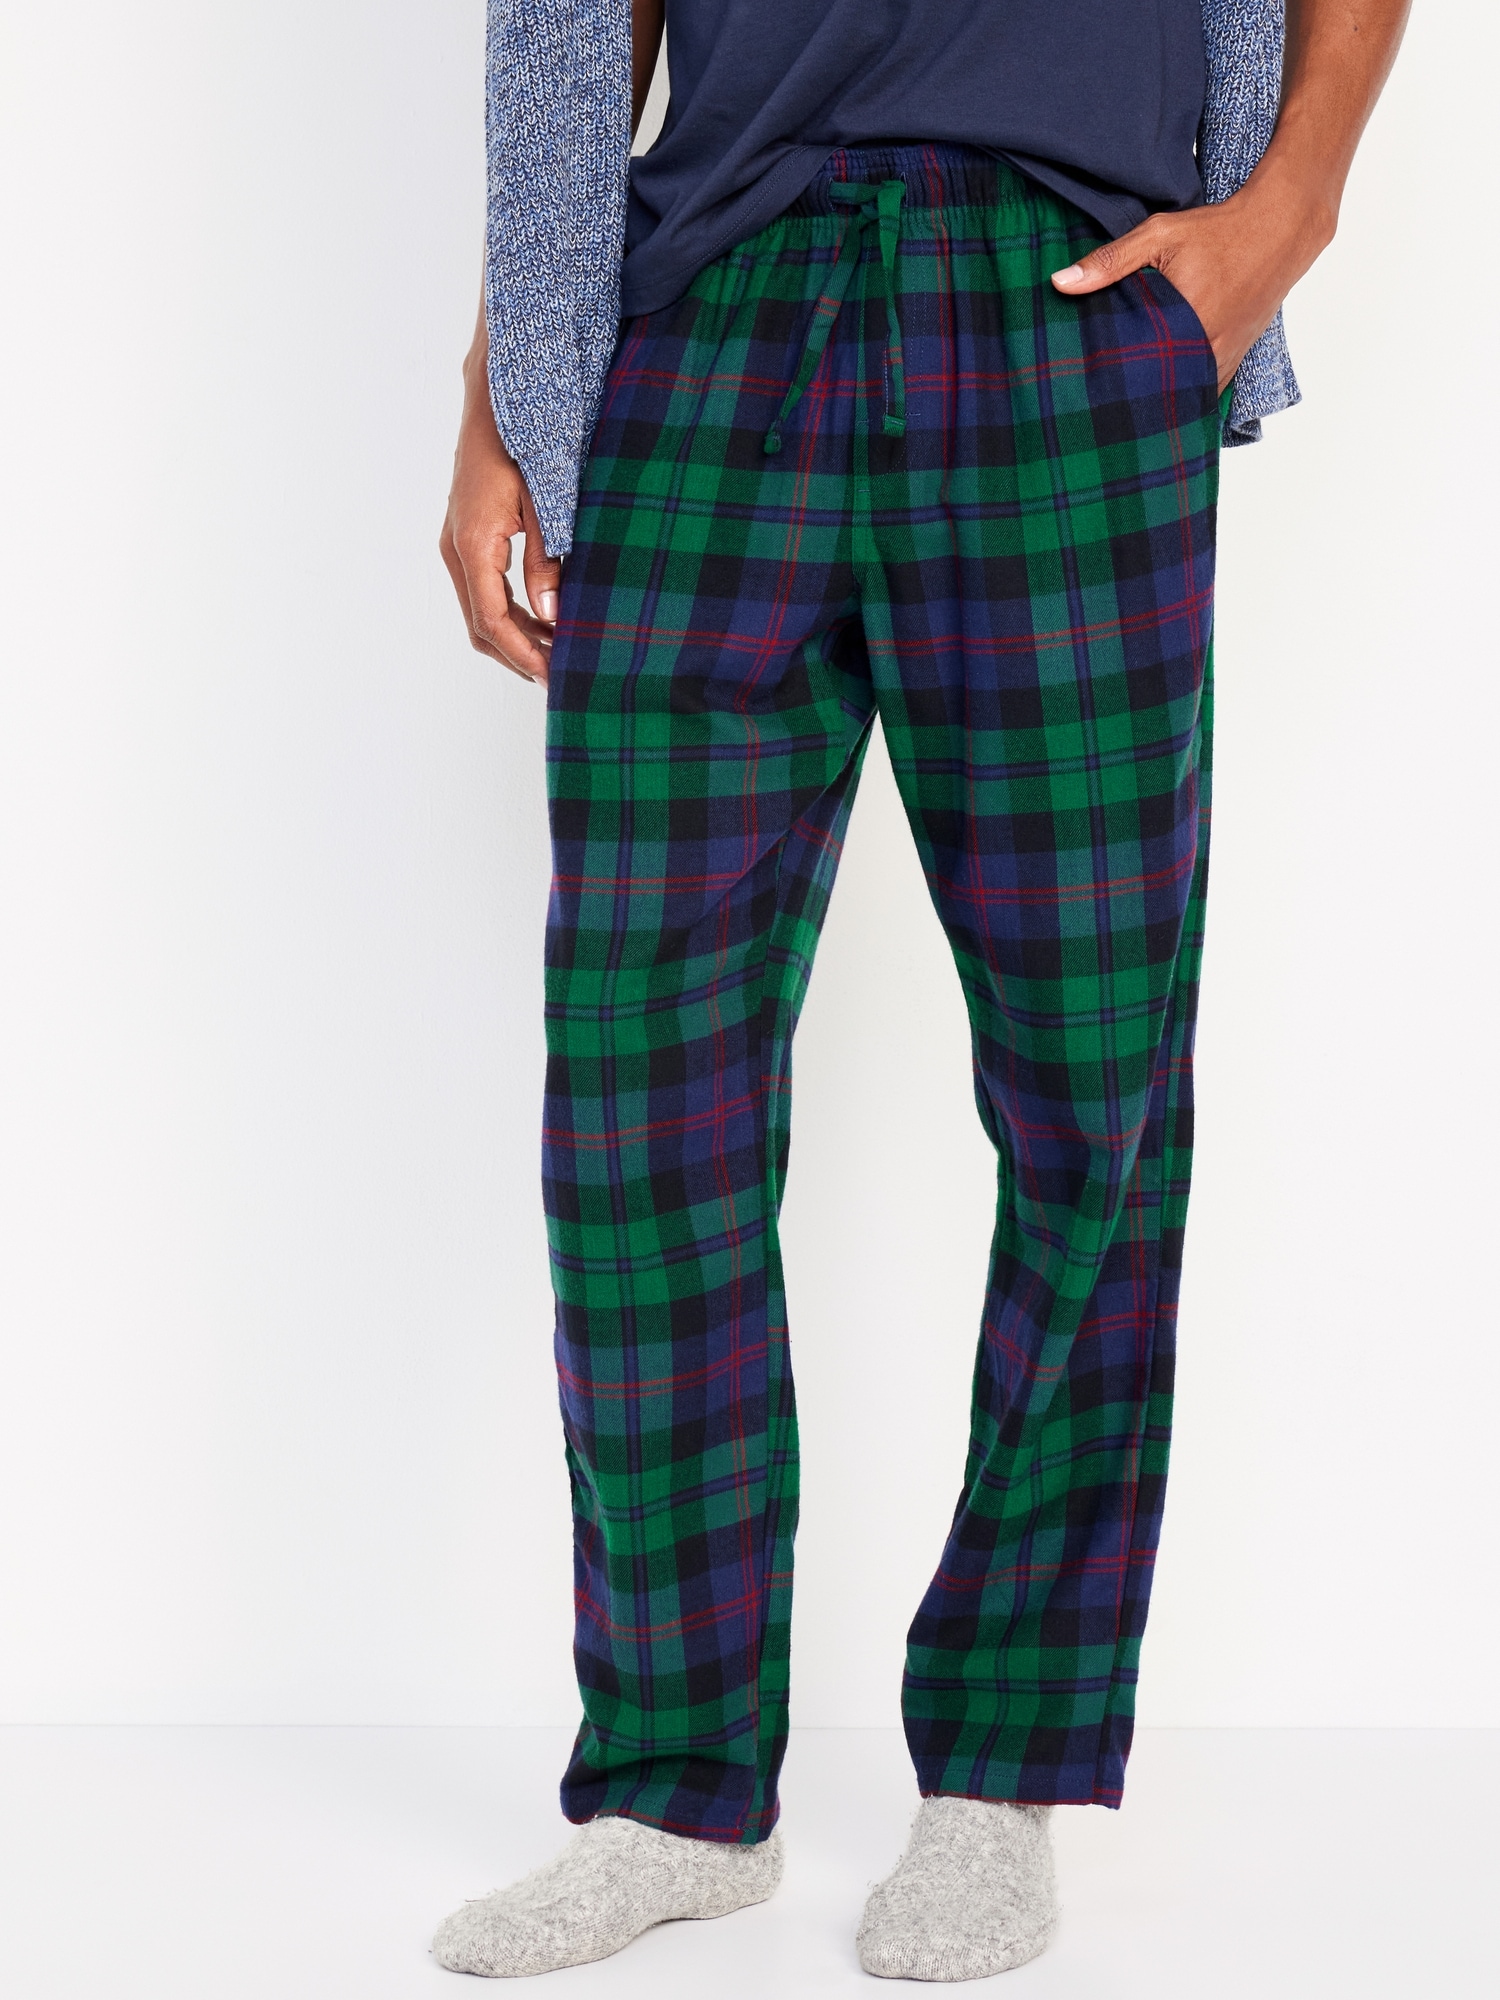 Wholesale Men's Fleece Pajama Pants - 3X-5X, Blue/Orange Plaid